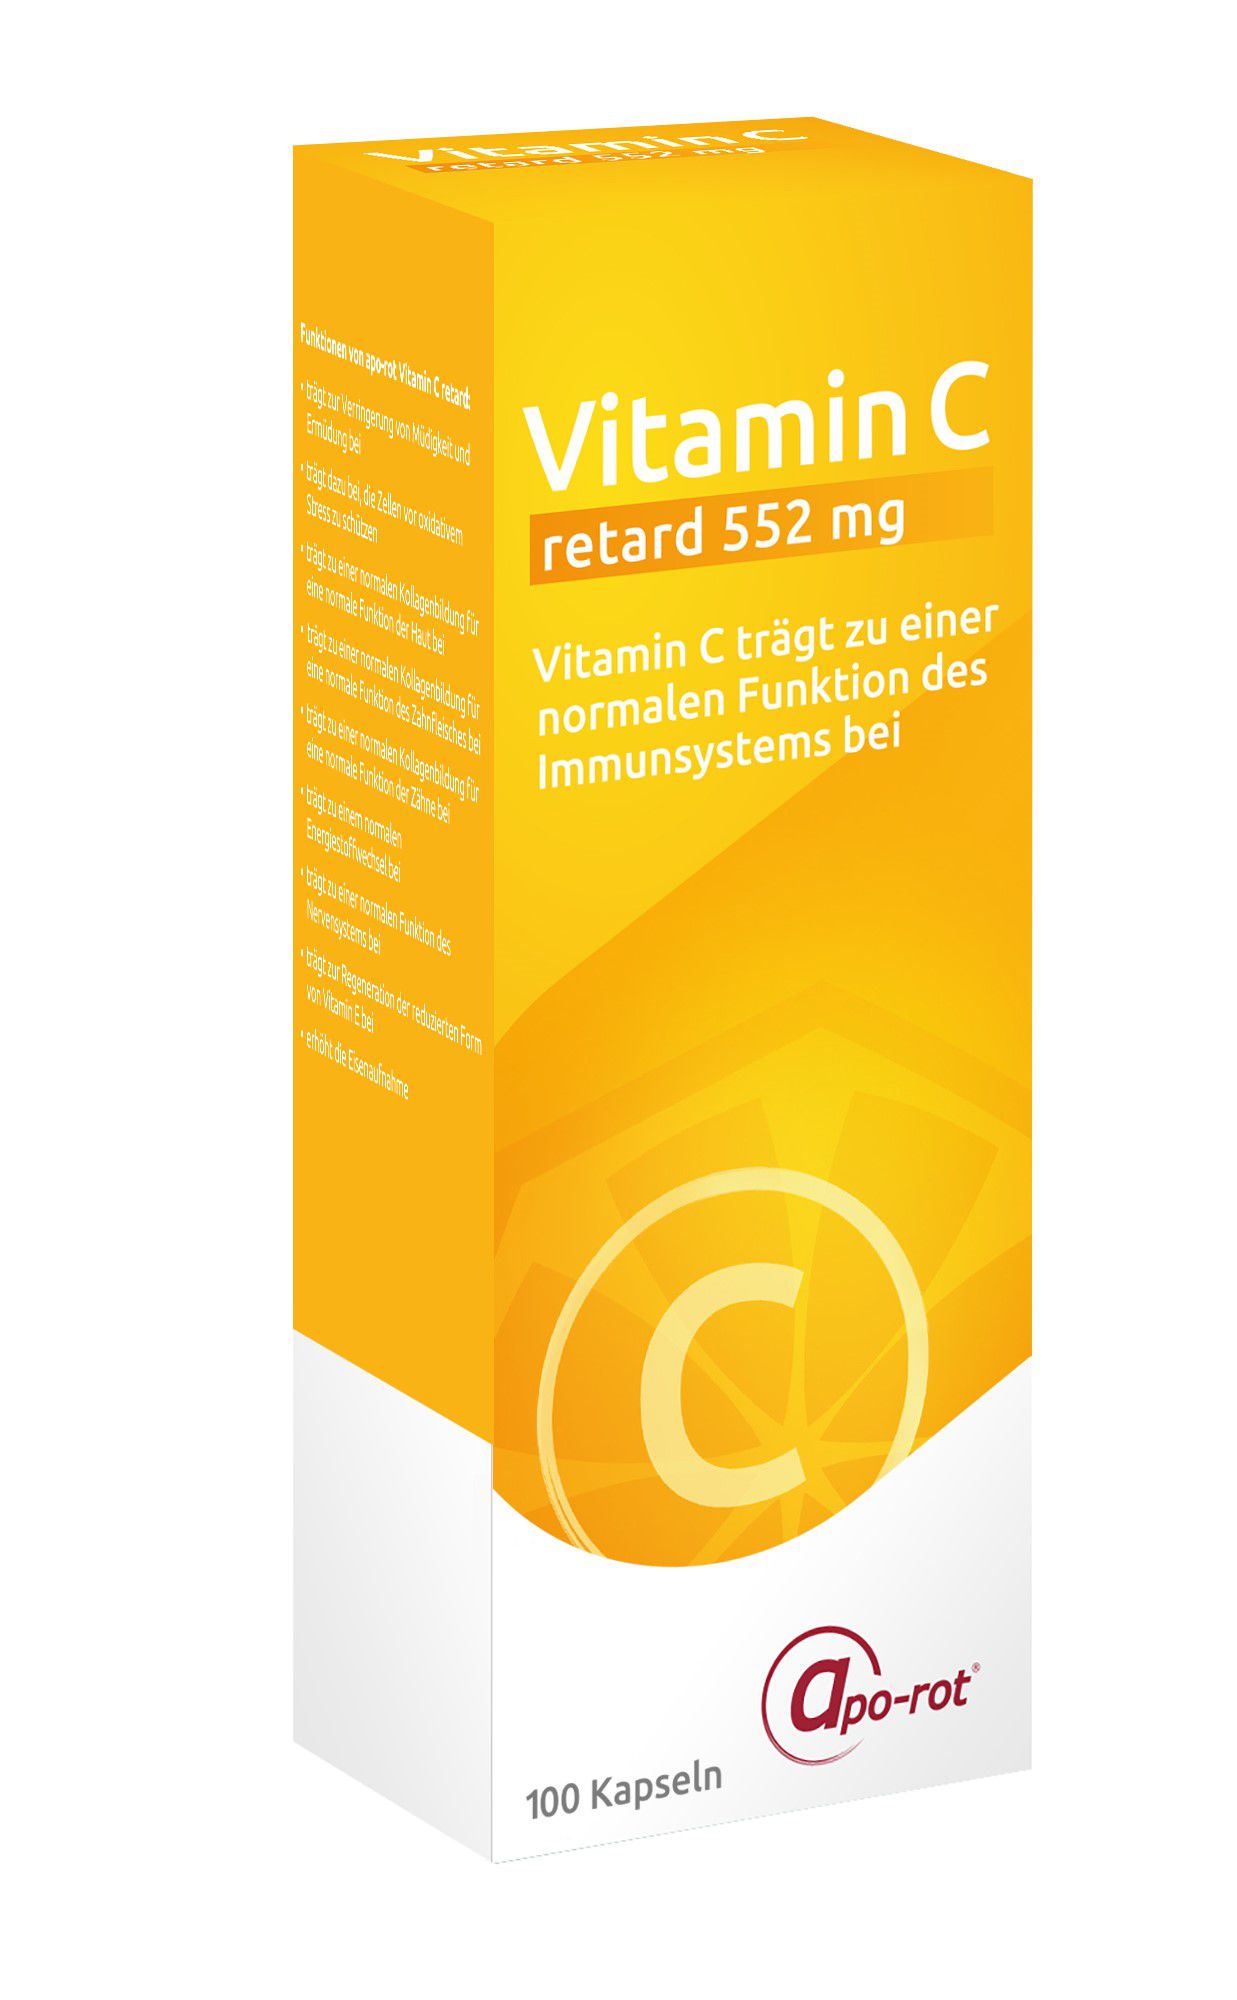 apo-rot Vitamin C retard 552 mg